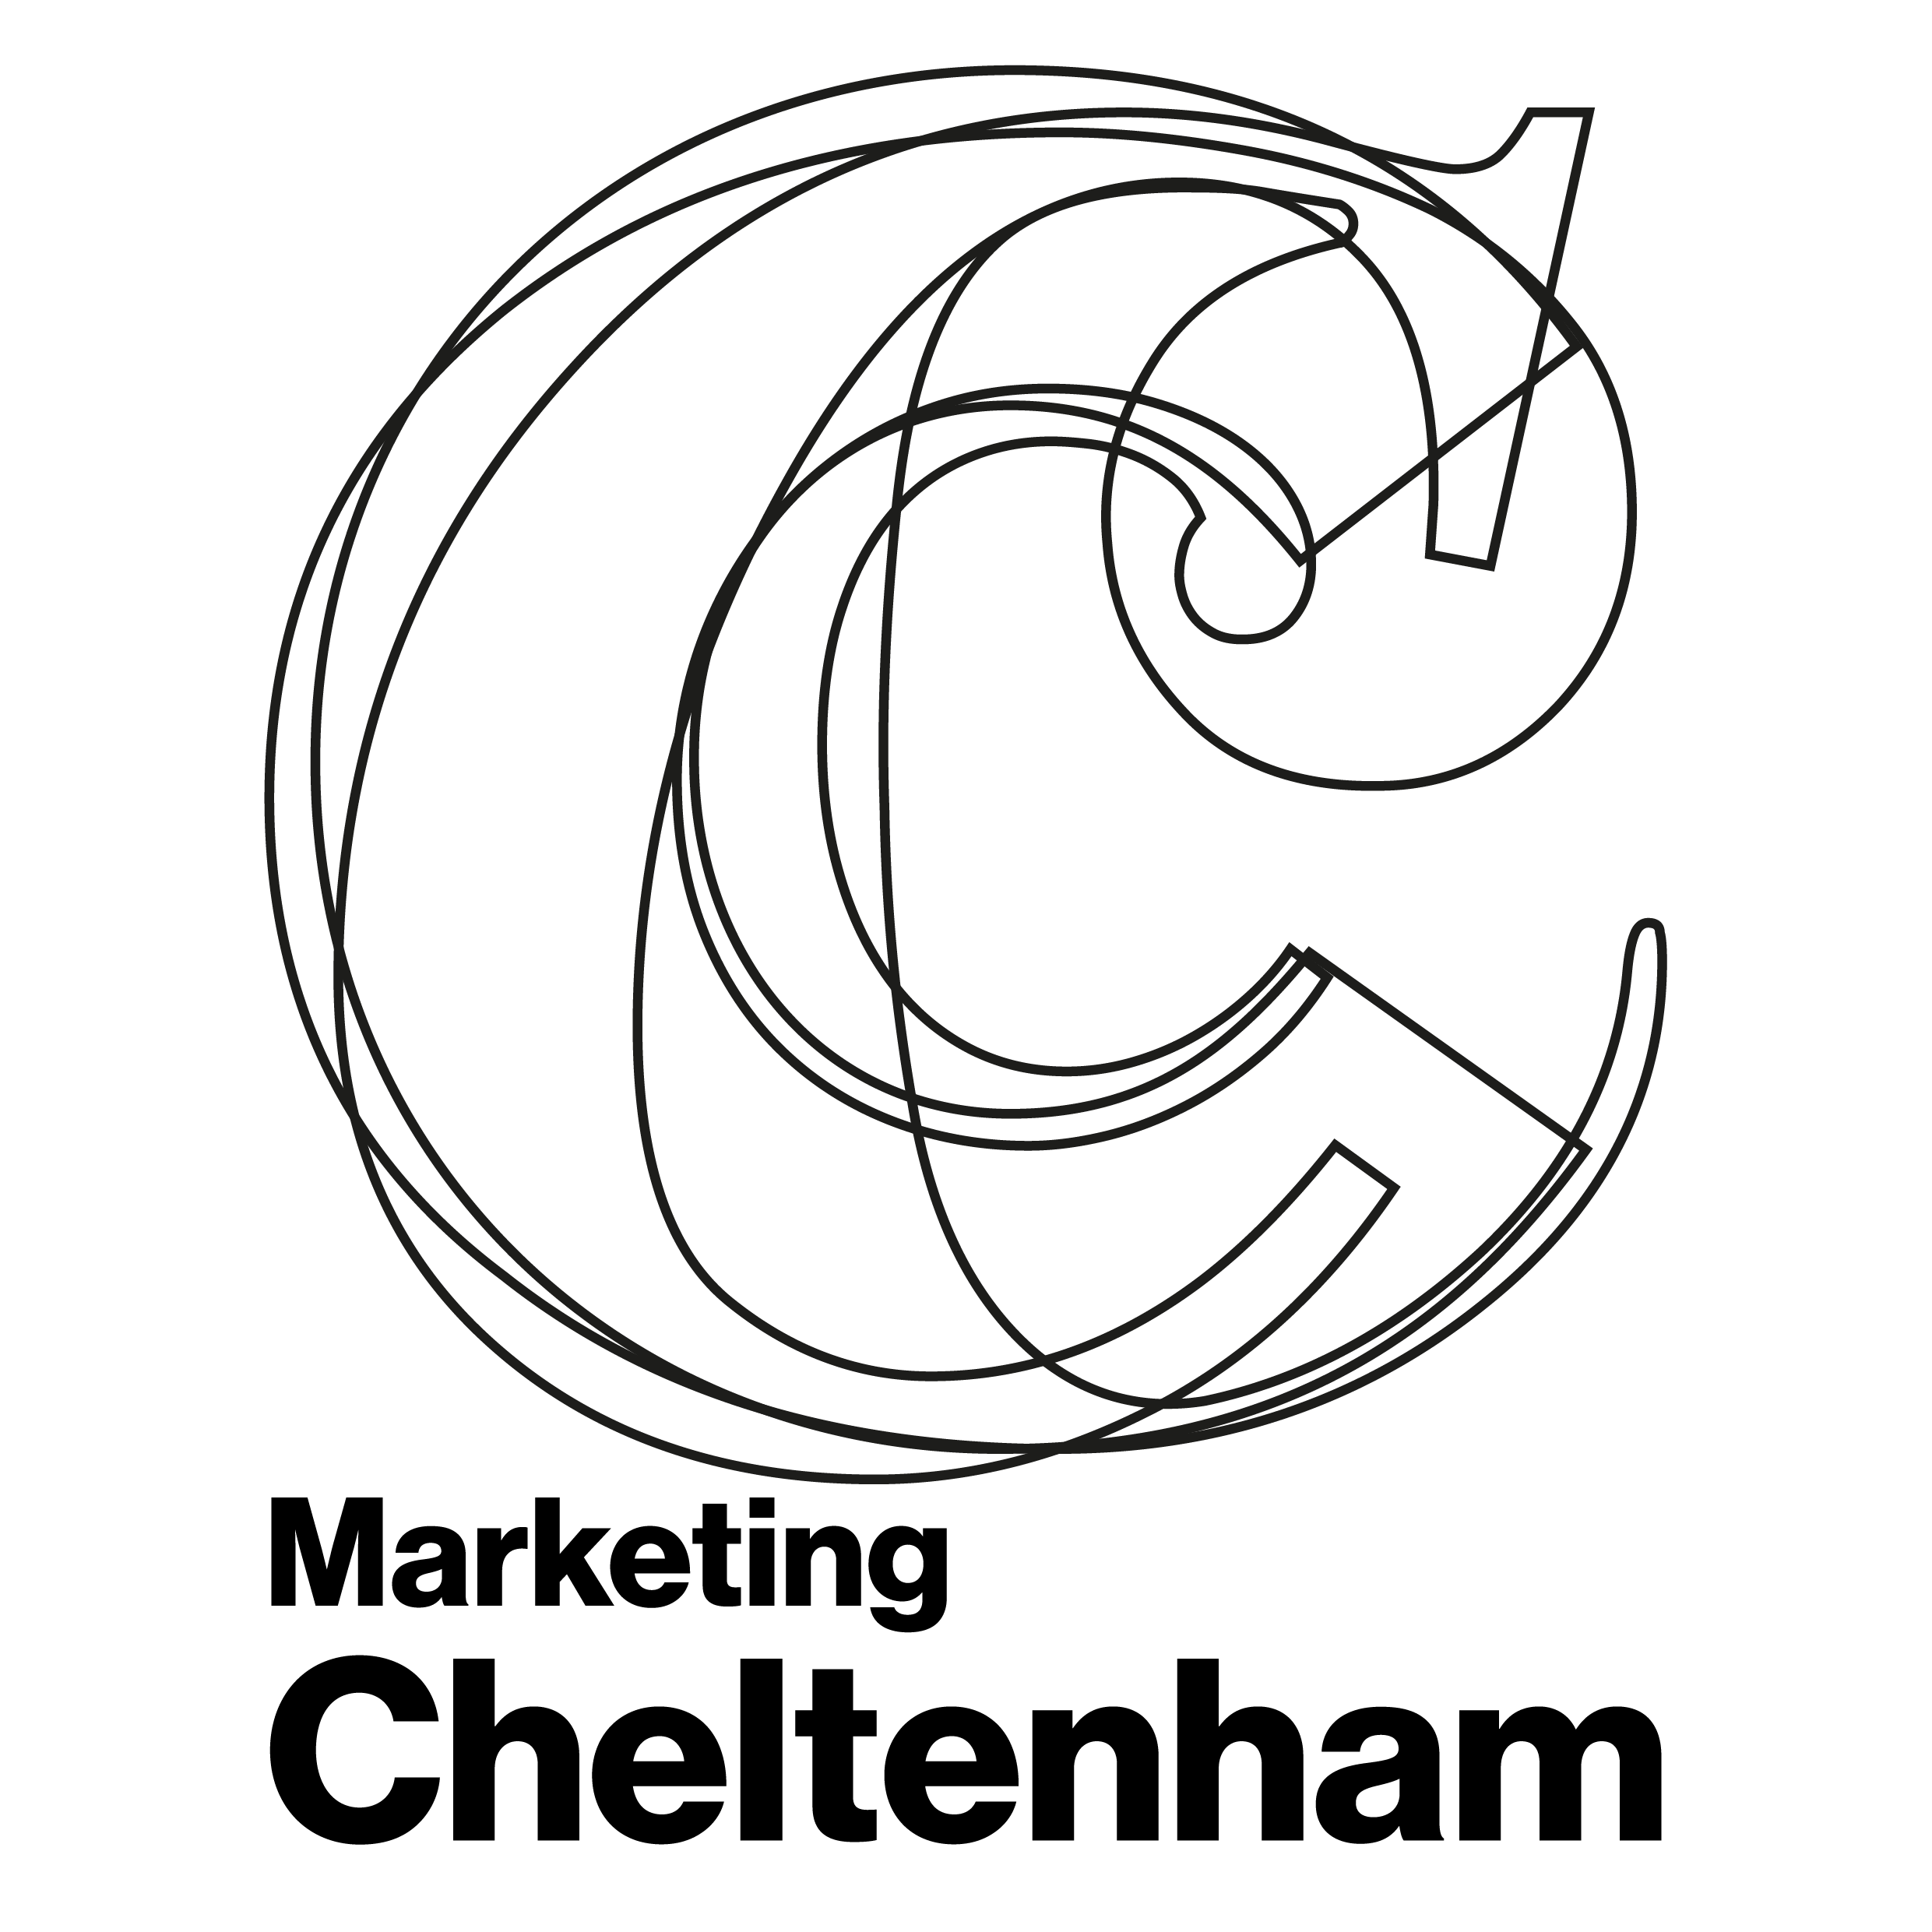 Marketing Cheltenham logo